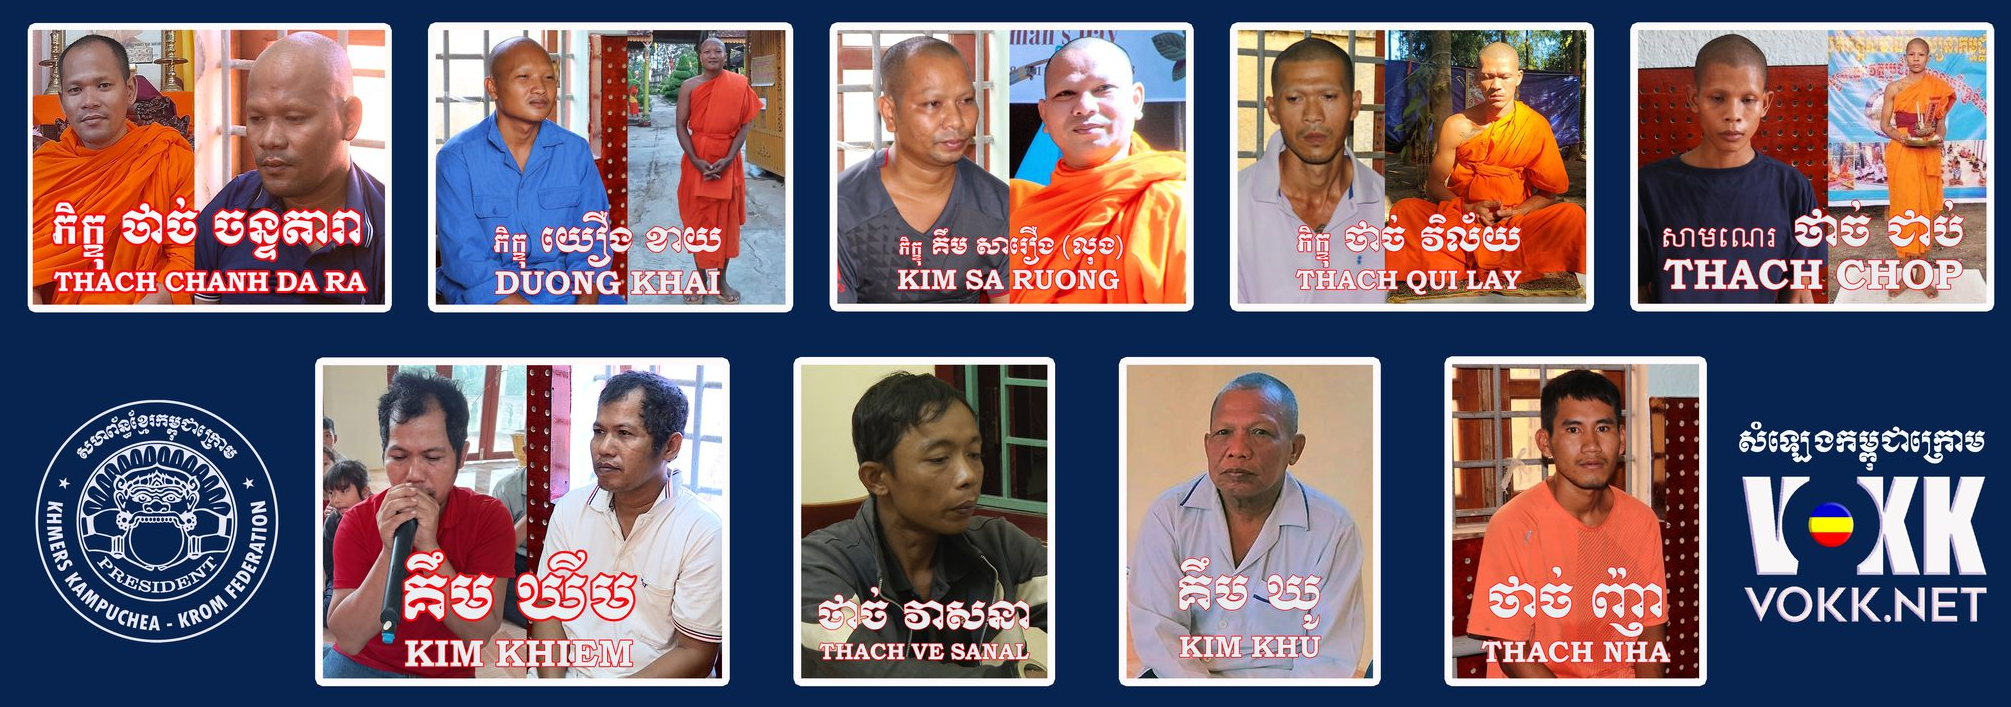 Tiếng Thét Bất Công Vang Lên Từ Kampuchea-Krom: Lên Án Bắt Giữ Nhà Sư Khmer-Krom và Phá Hủy Sala Chol Tian Tại Tỉnh Long Hor